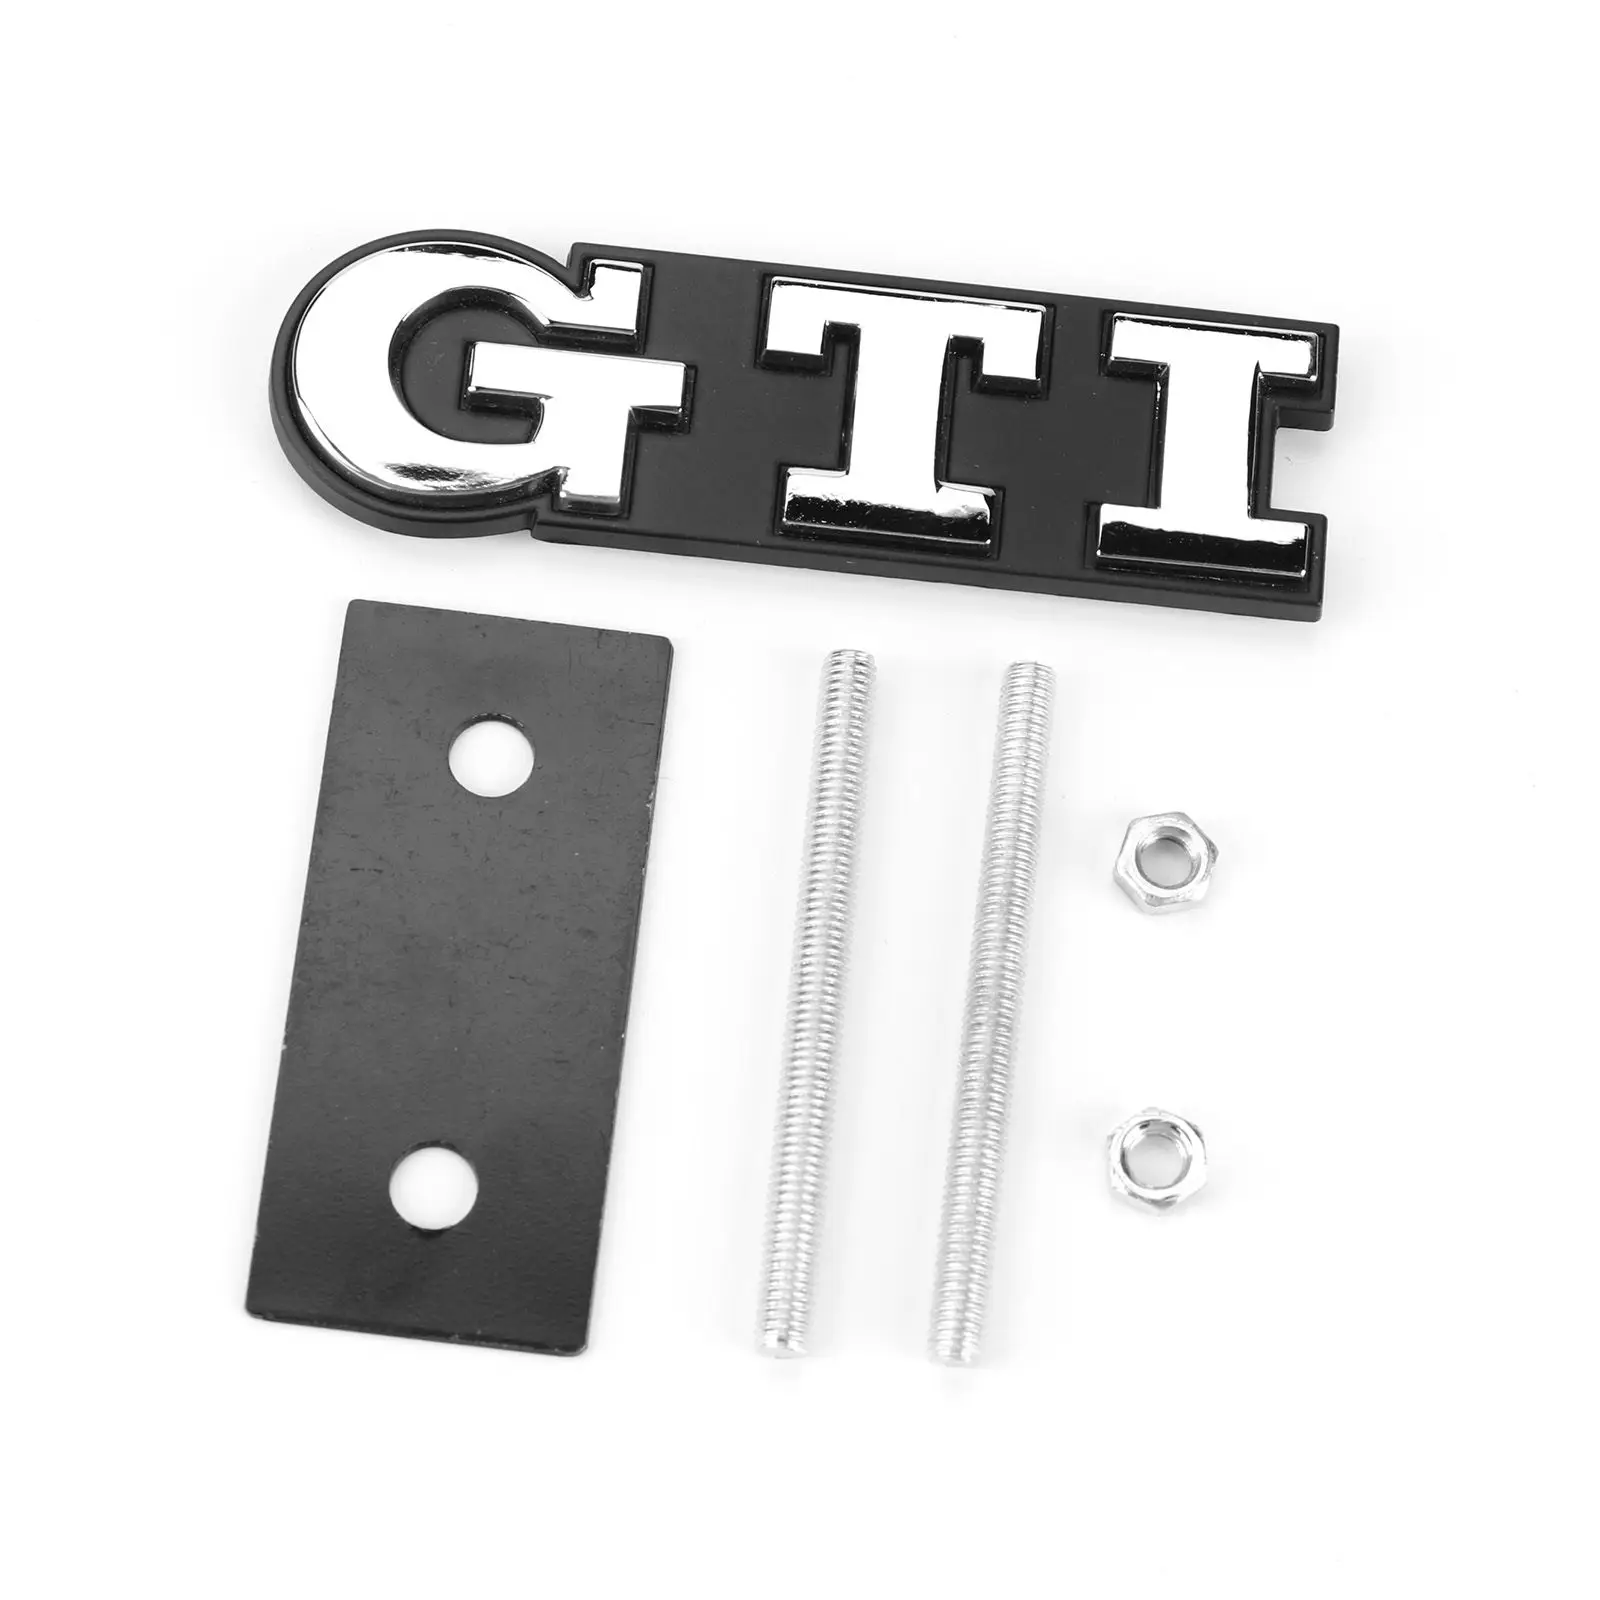 3D-Metal-GTI-araba-n-zgaras-Sticker-amblem-rozeti-araba-Styling-i-in-VW-Volkswagen-GTI.jpg